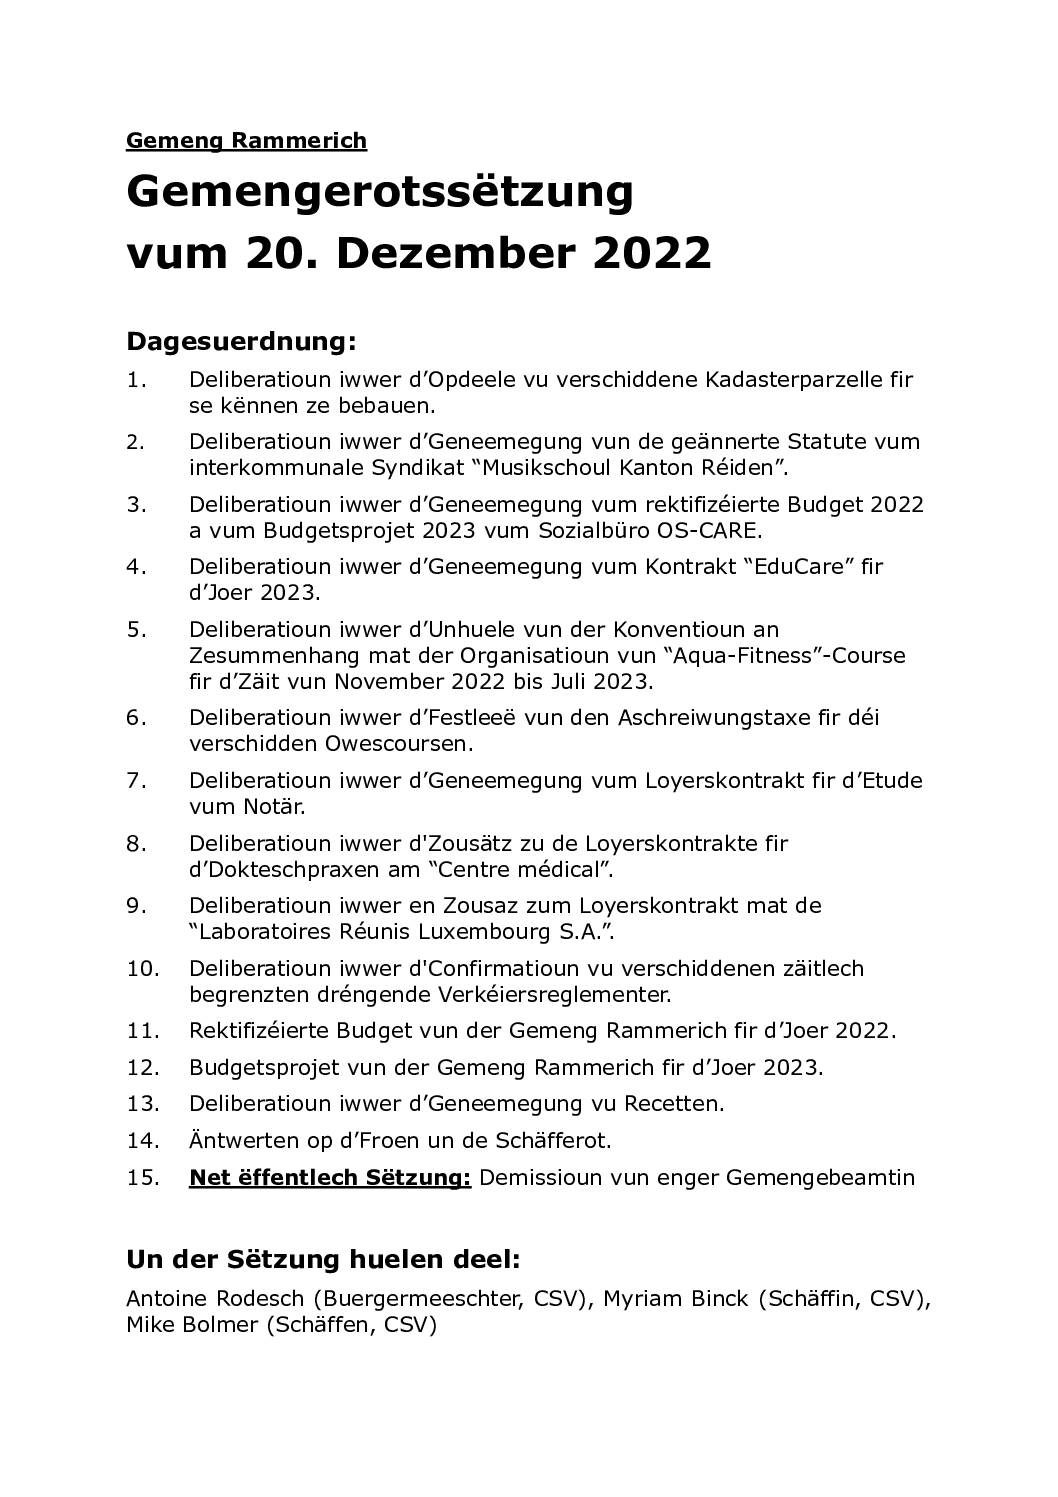 Rapport du conseil communal du 20.12.2022 (lëtzebuergesch)